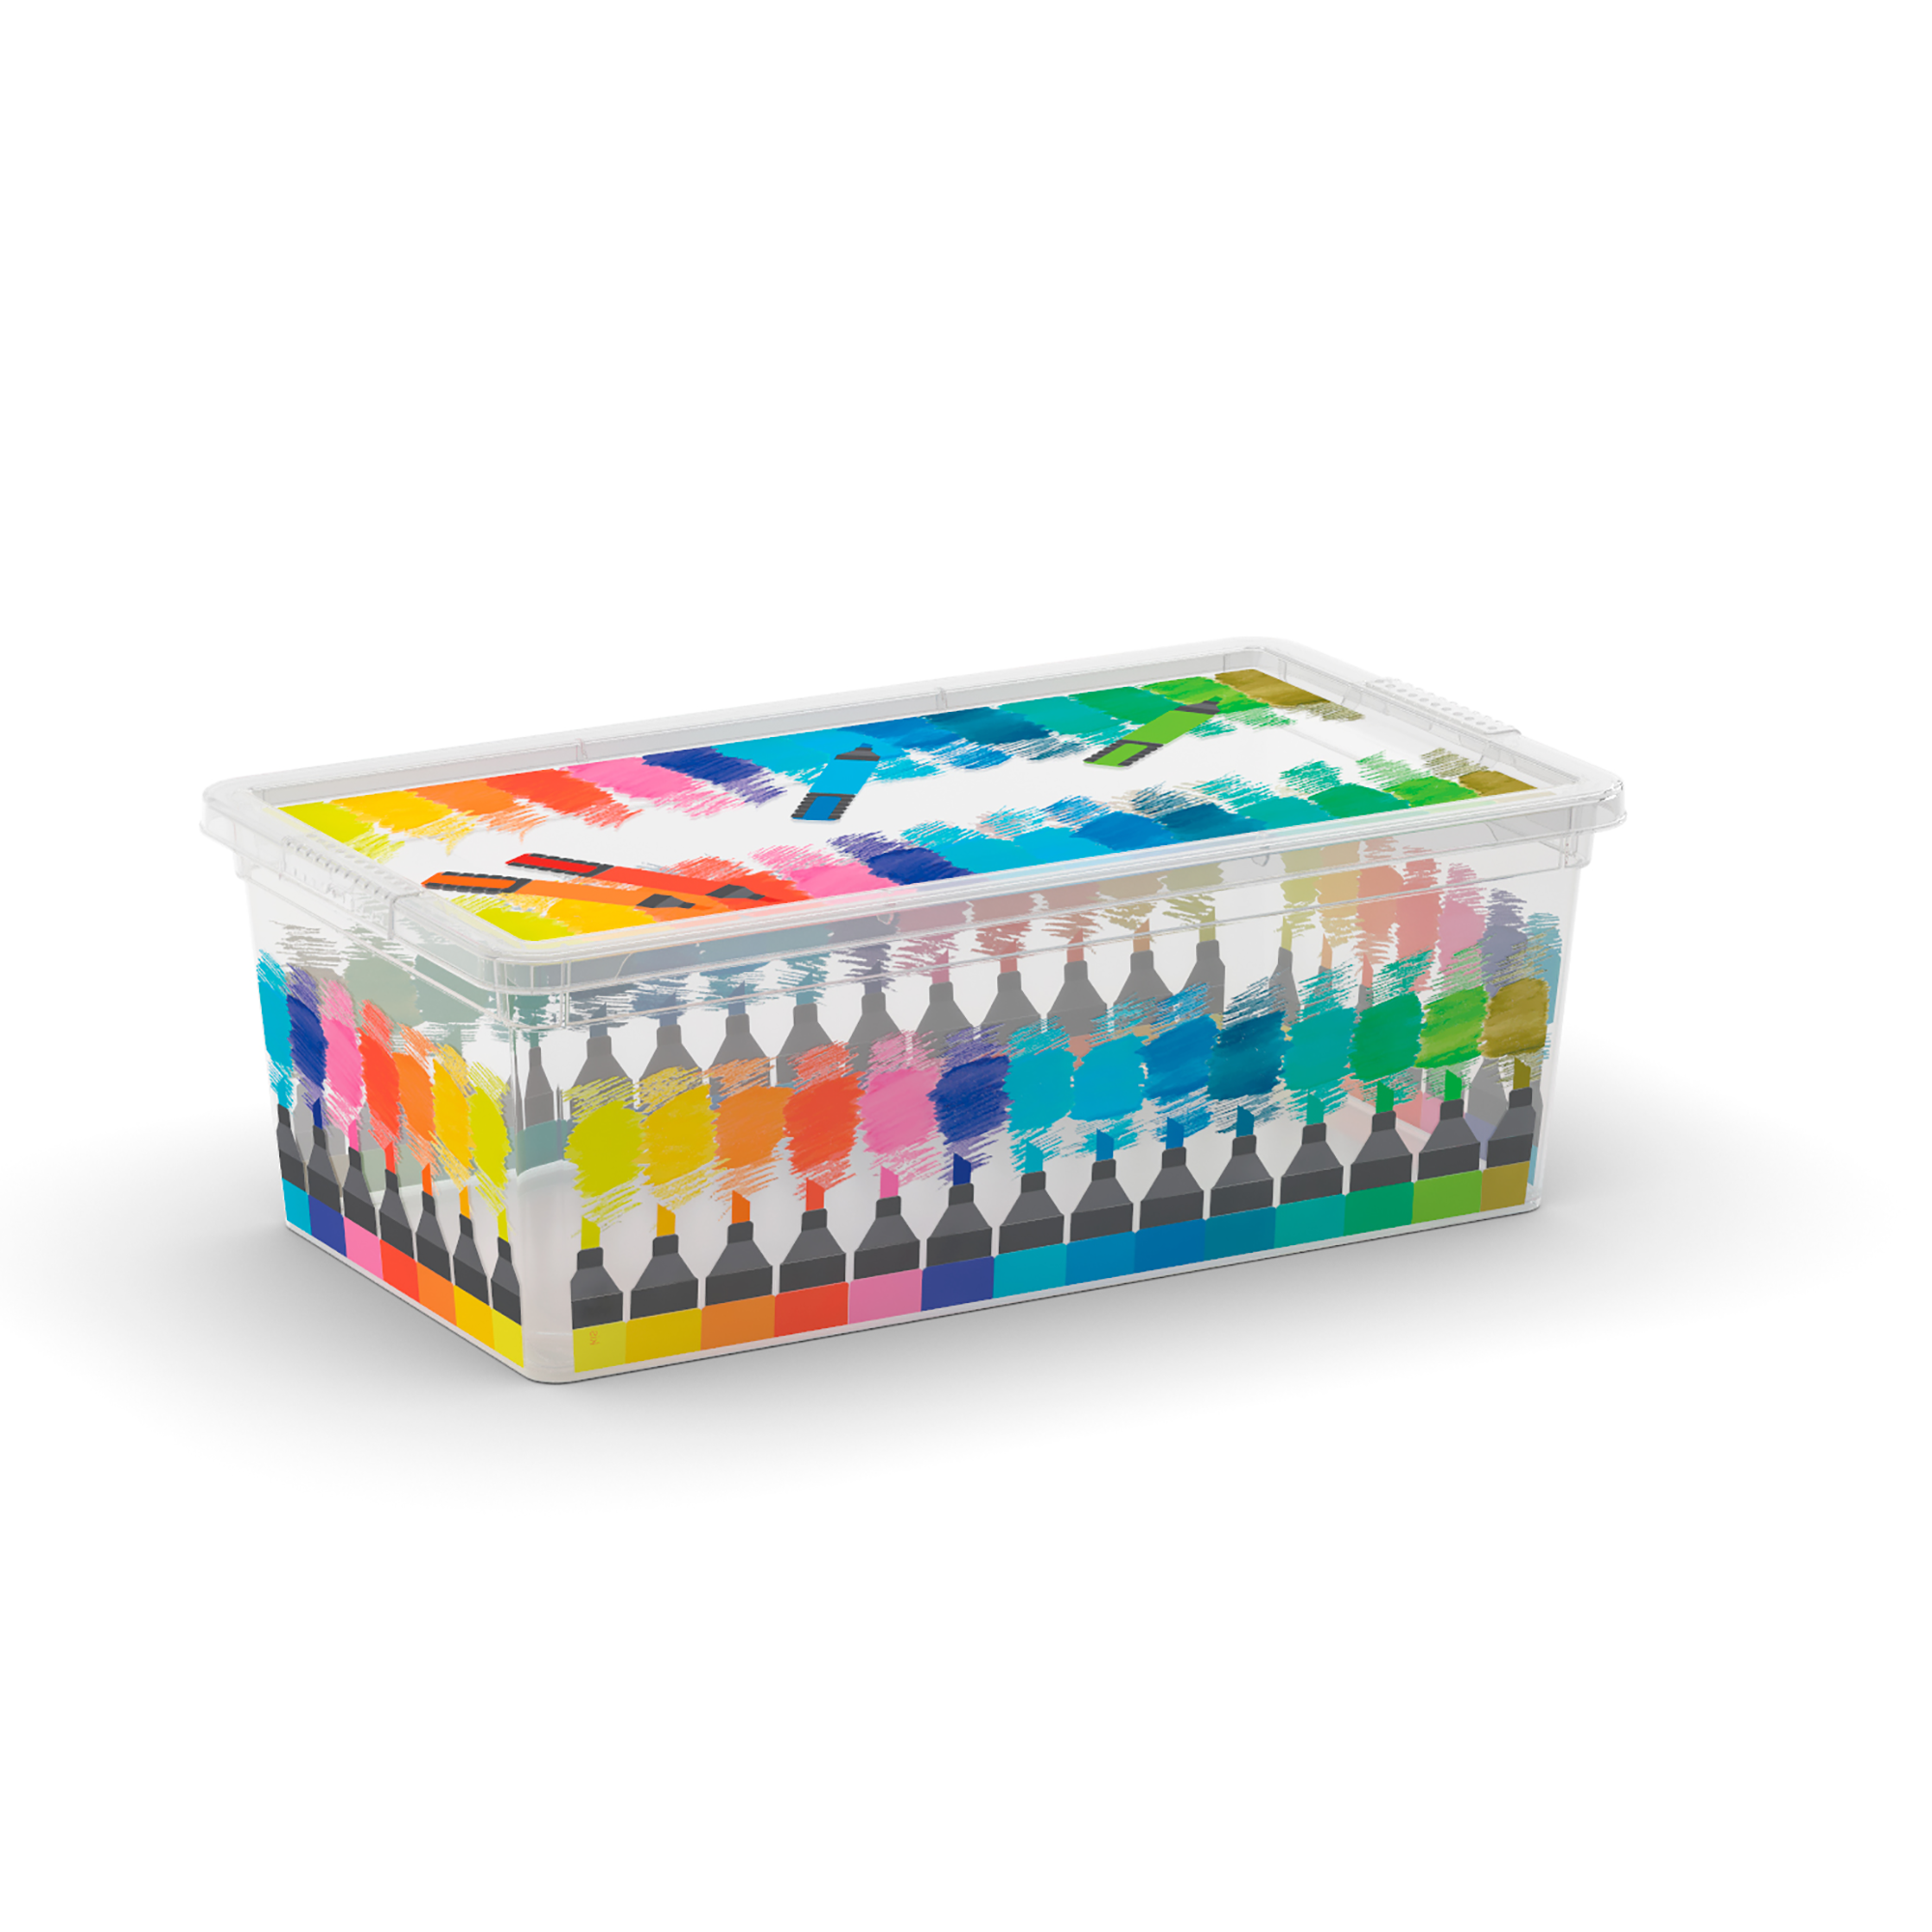 Aufbewahrungsbox 'C Box Style' Motiv Buntstifte 33,5 x 19 x 12 cm, mit Deckel + product picture